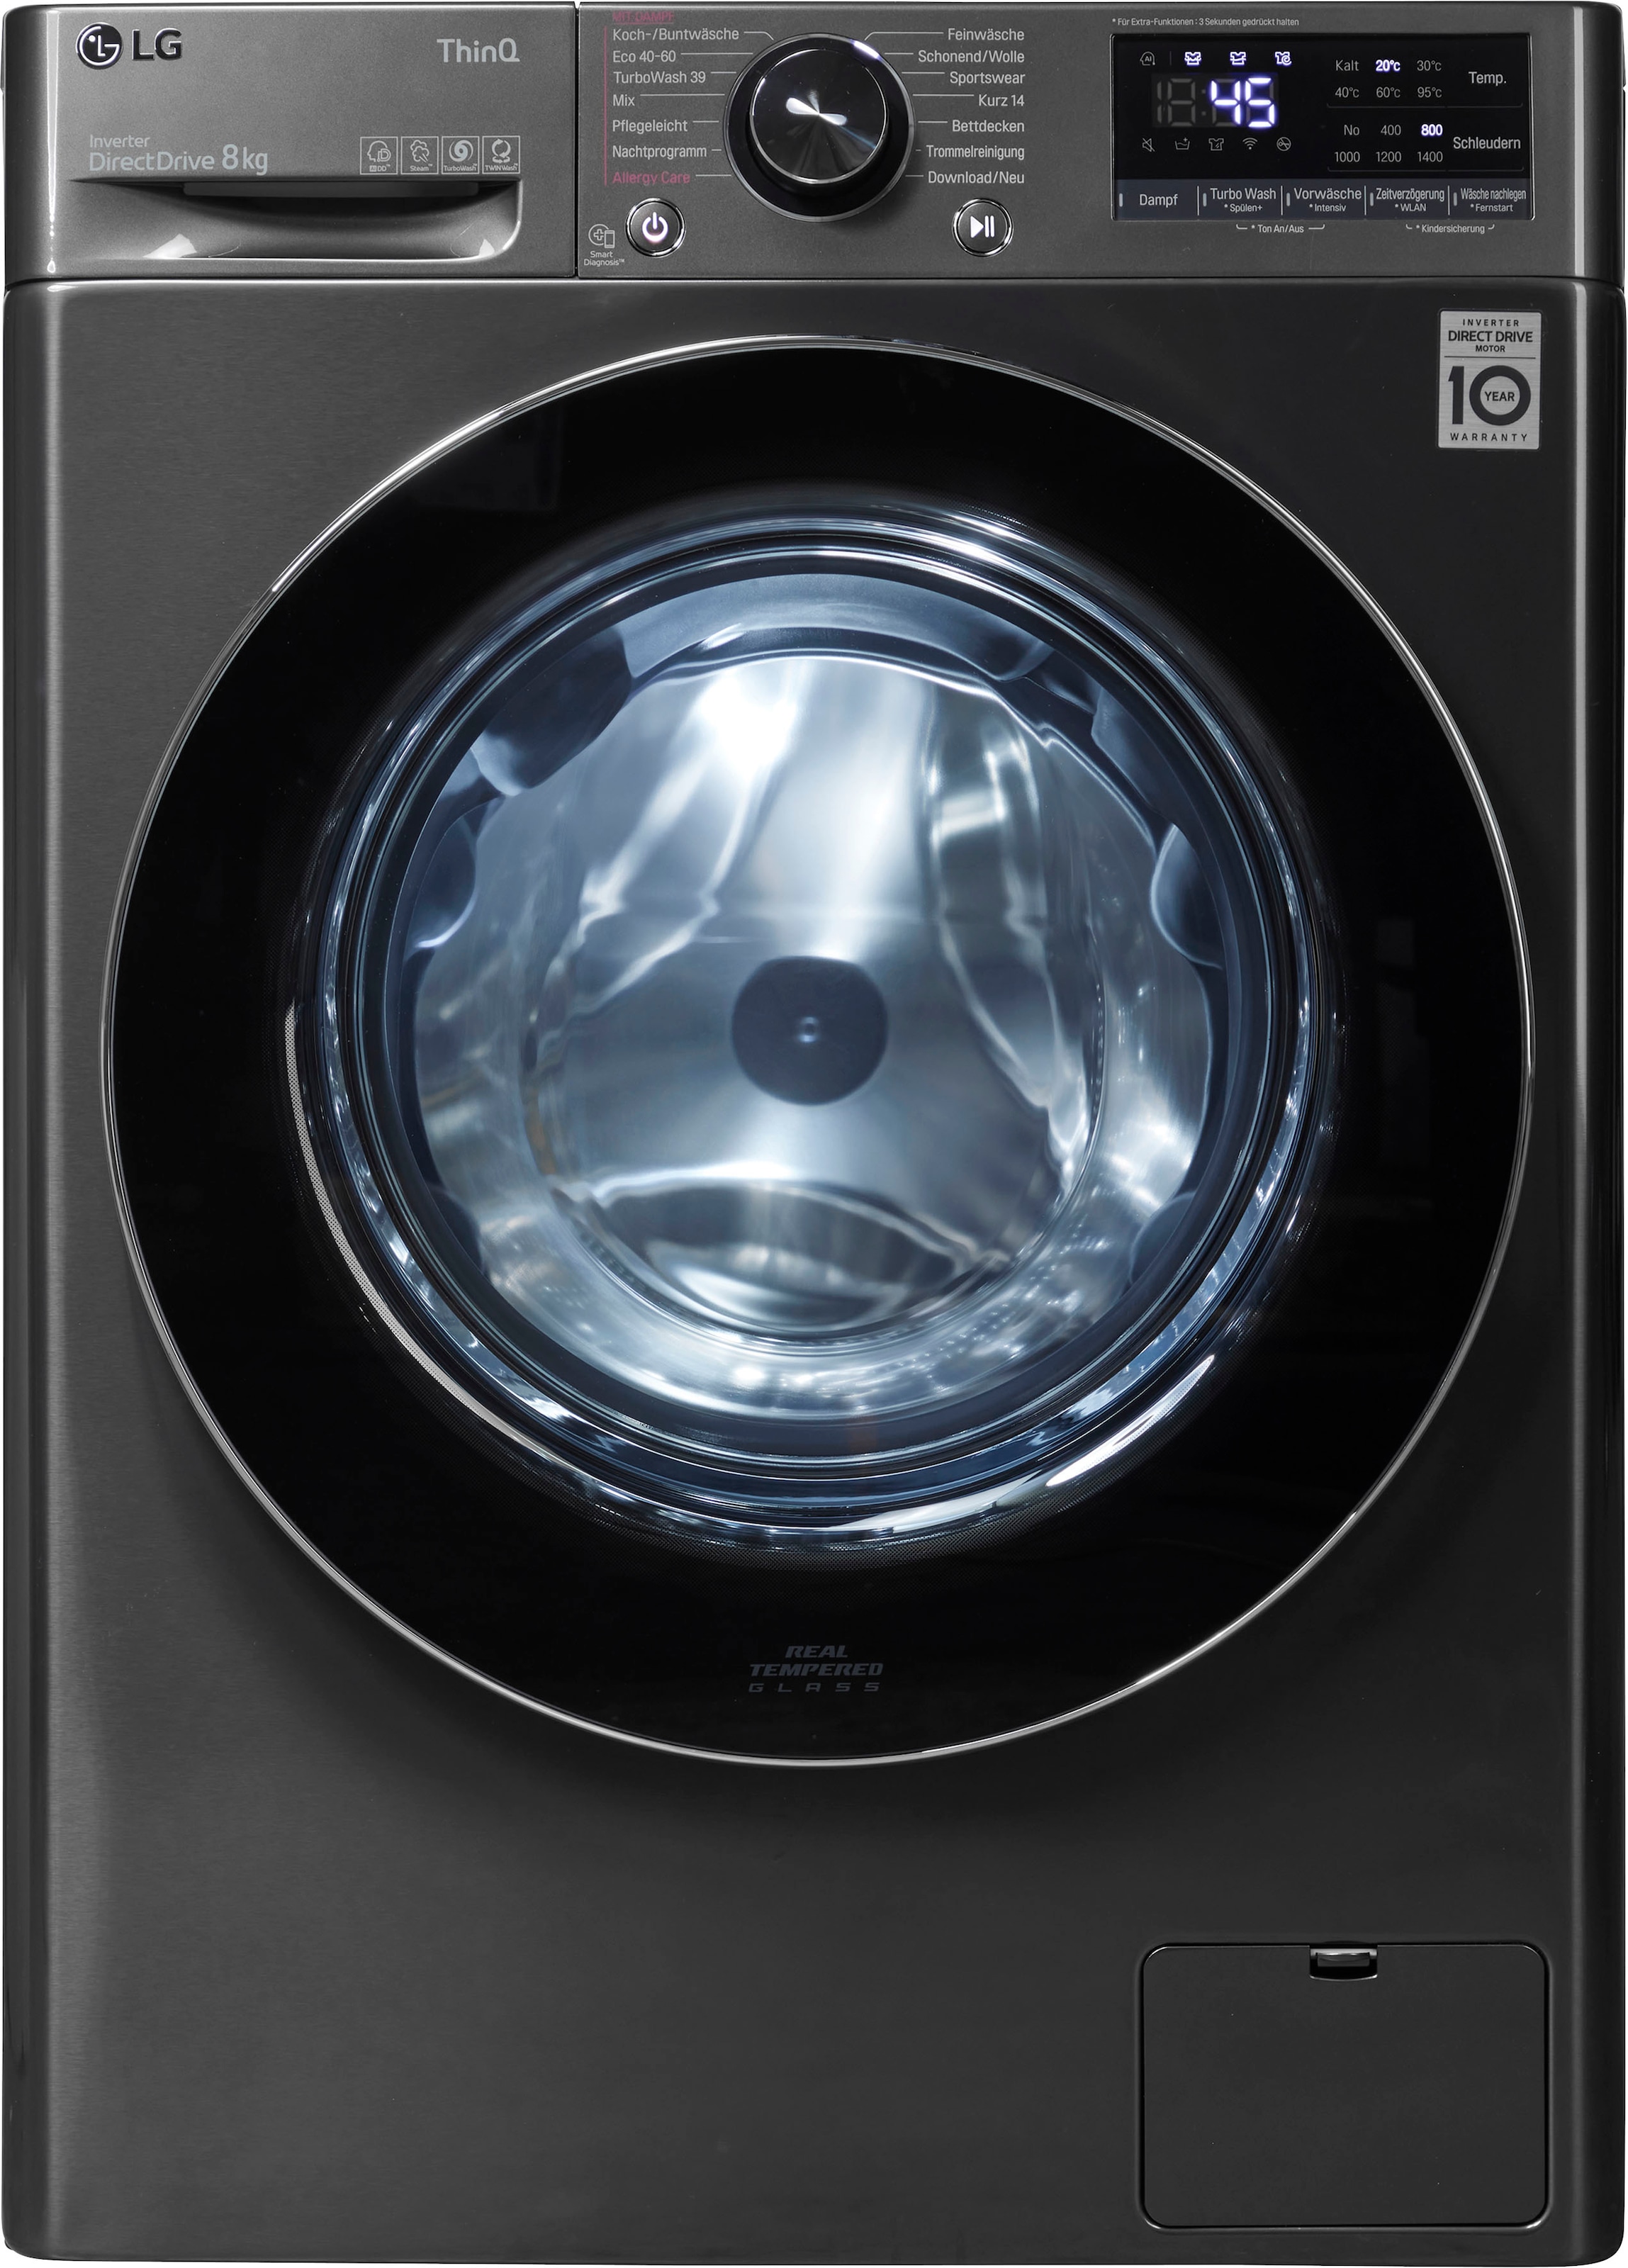 8 »F4WV708P2BA«, in Waschmaschine 1400 Minuten 39 kg, Waschen TurboWash® U/min, LG bestellen nur - F4WV708P2BA,